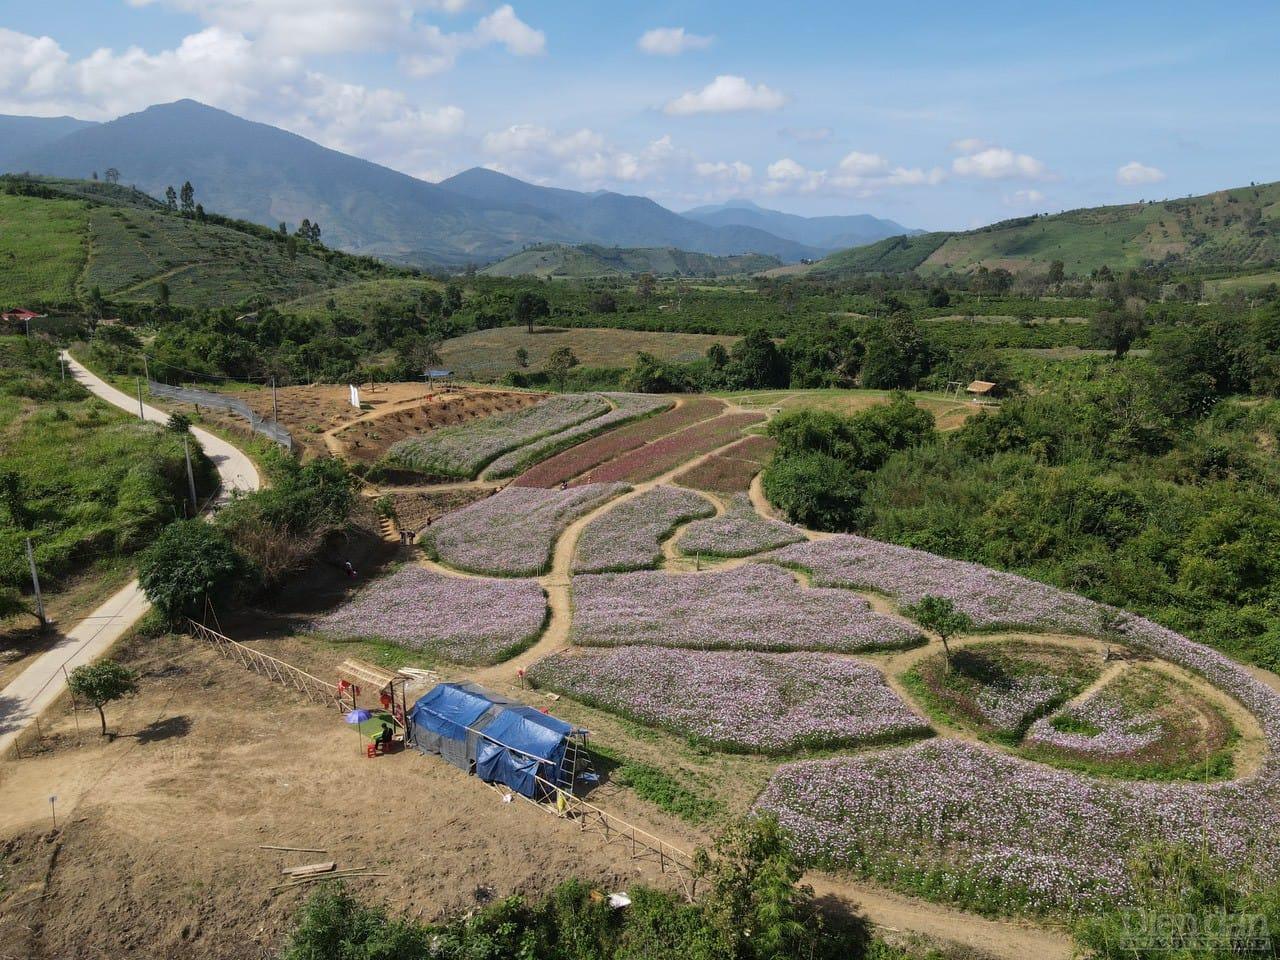 Vườn hoa của nông dân Đắk Lắk tạo ra một điểm checkin hấp dẫn ở địa phương